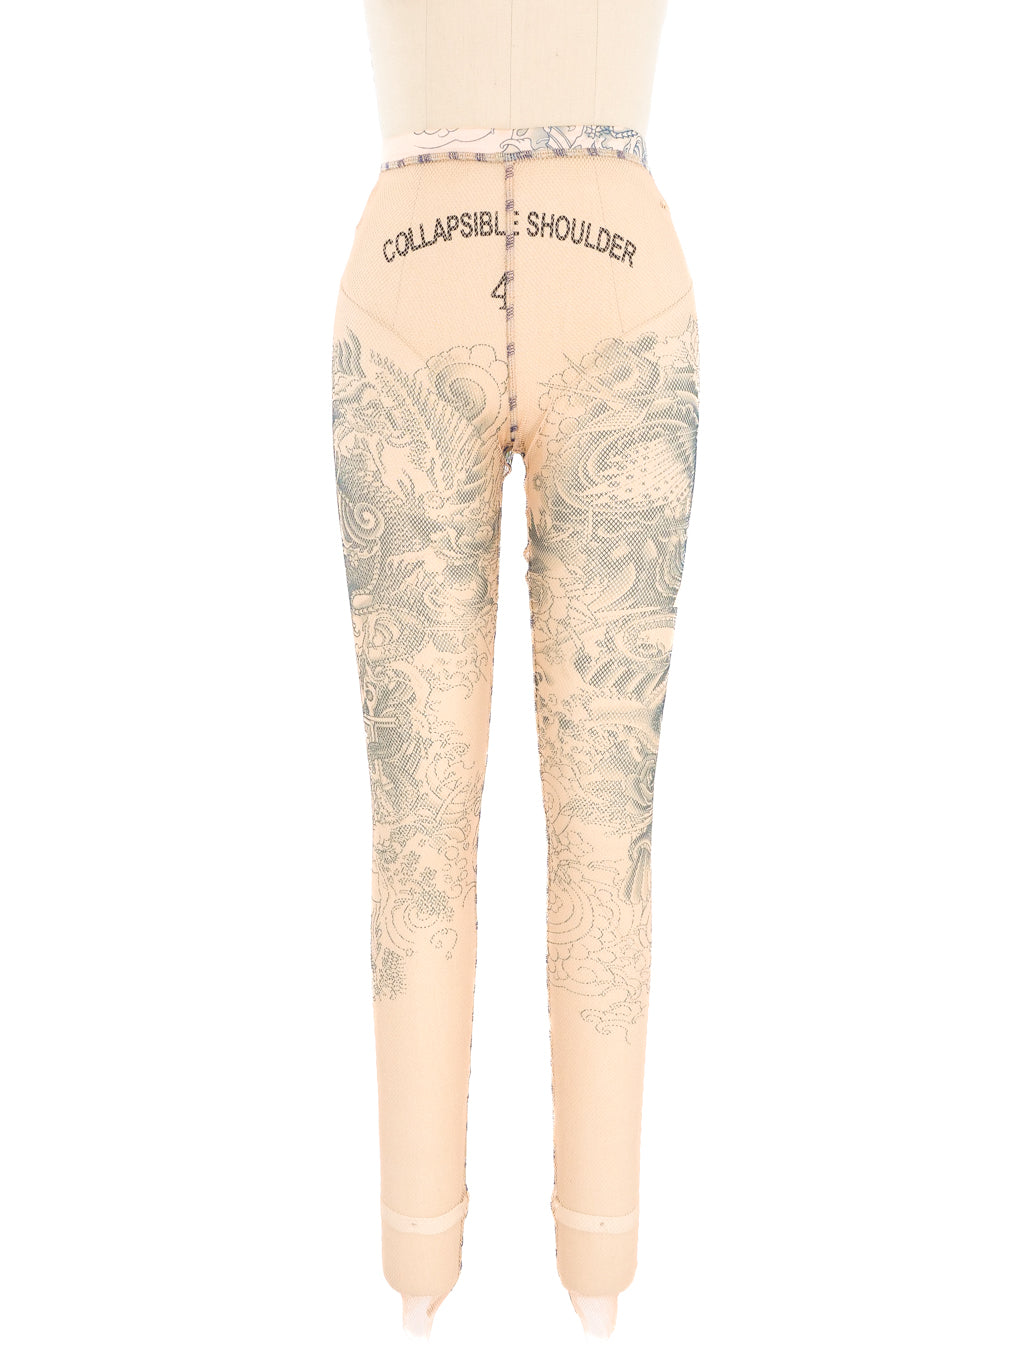 Jean Paul Gaultier Fishnet Tattoo Leggings